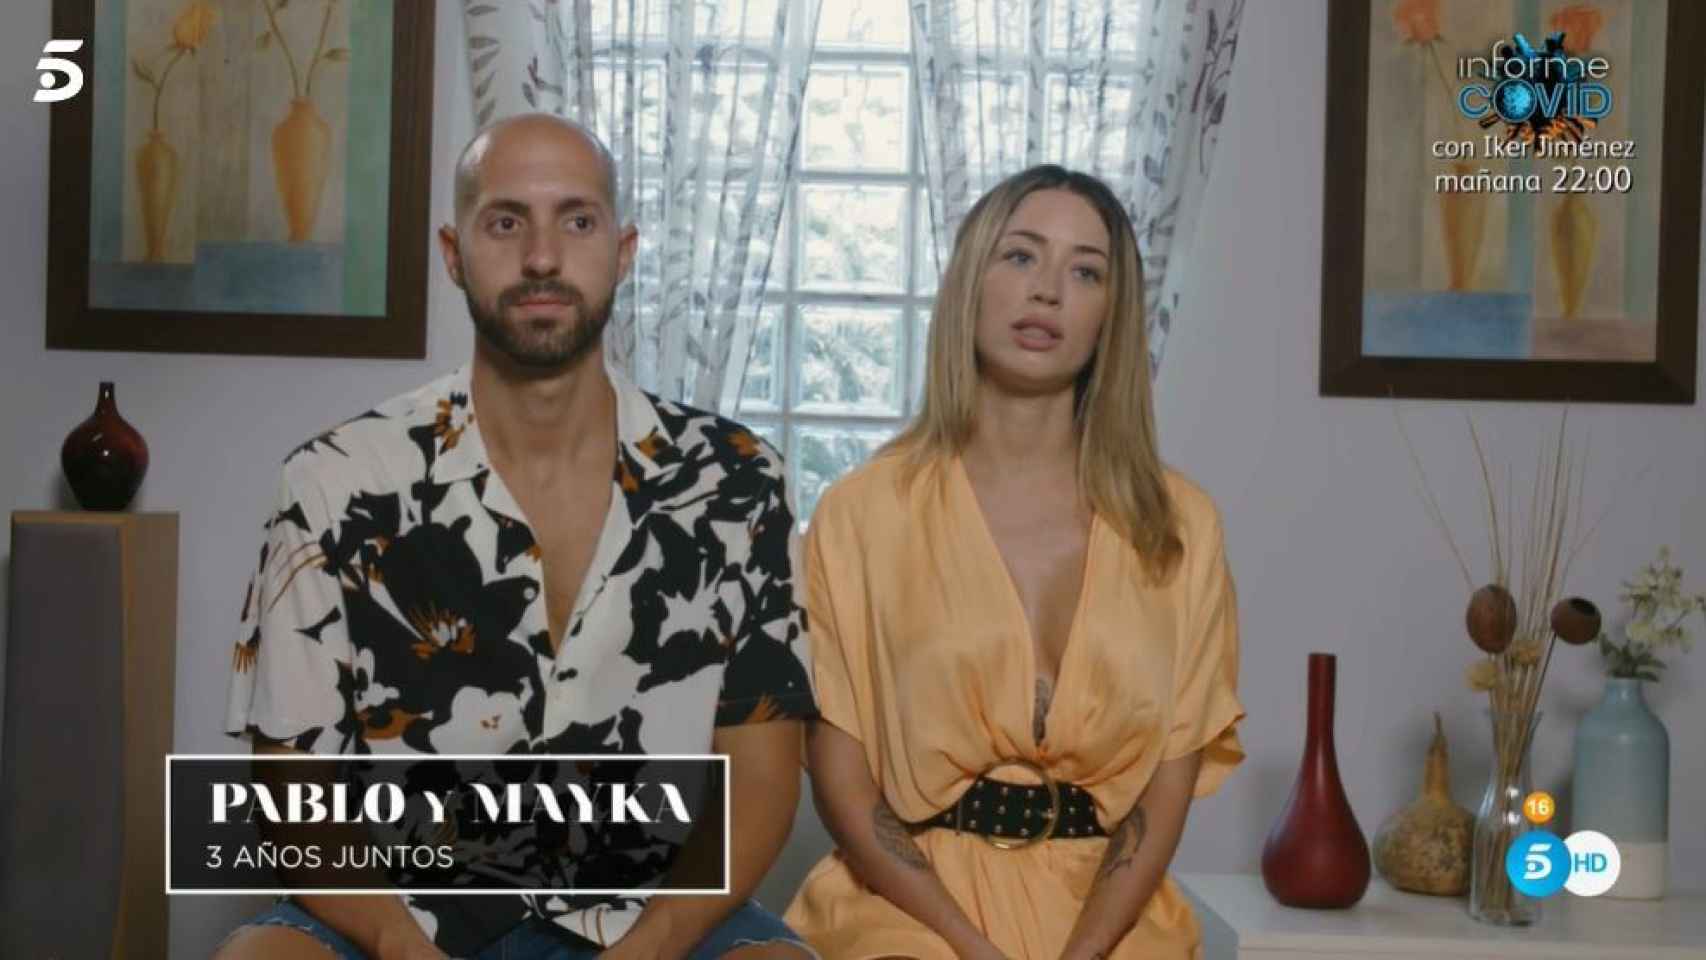 Pablo y Mayka en el vídeo de presentación.